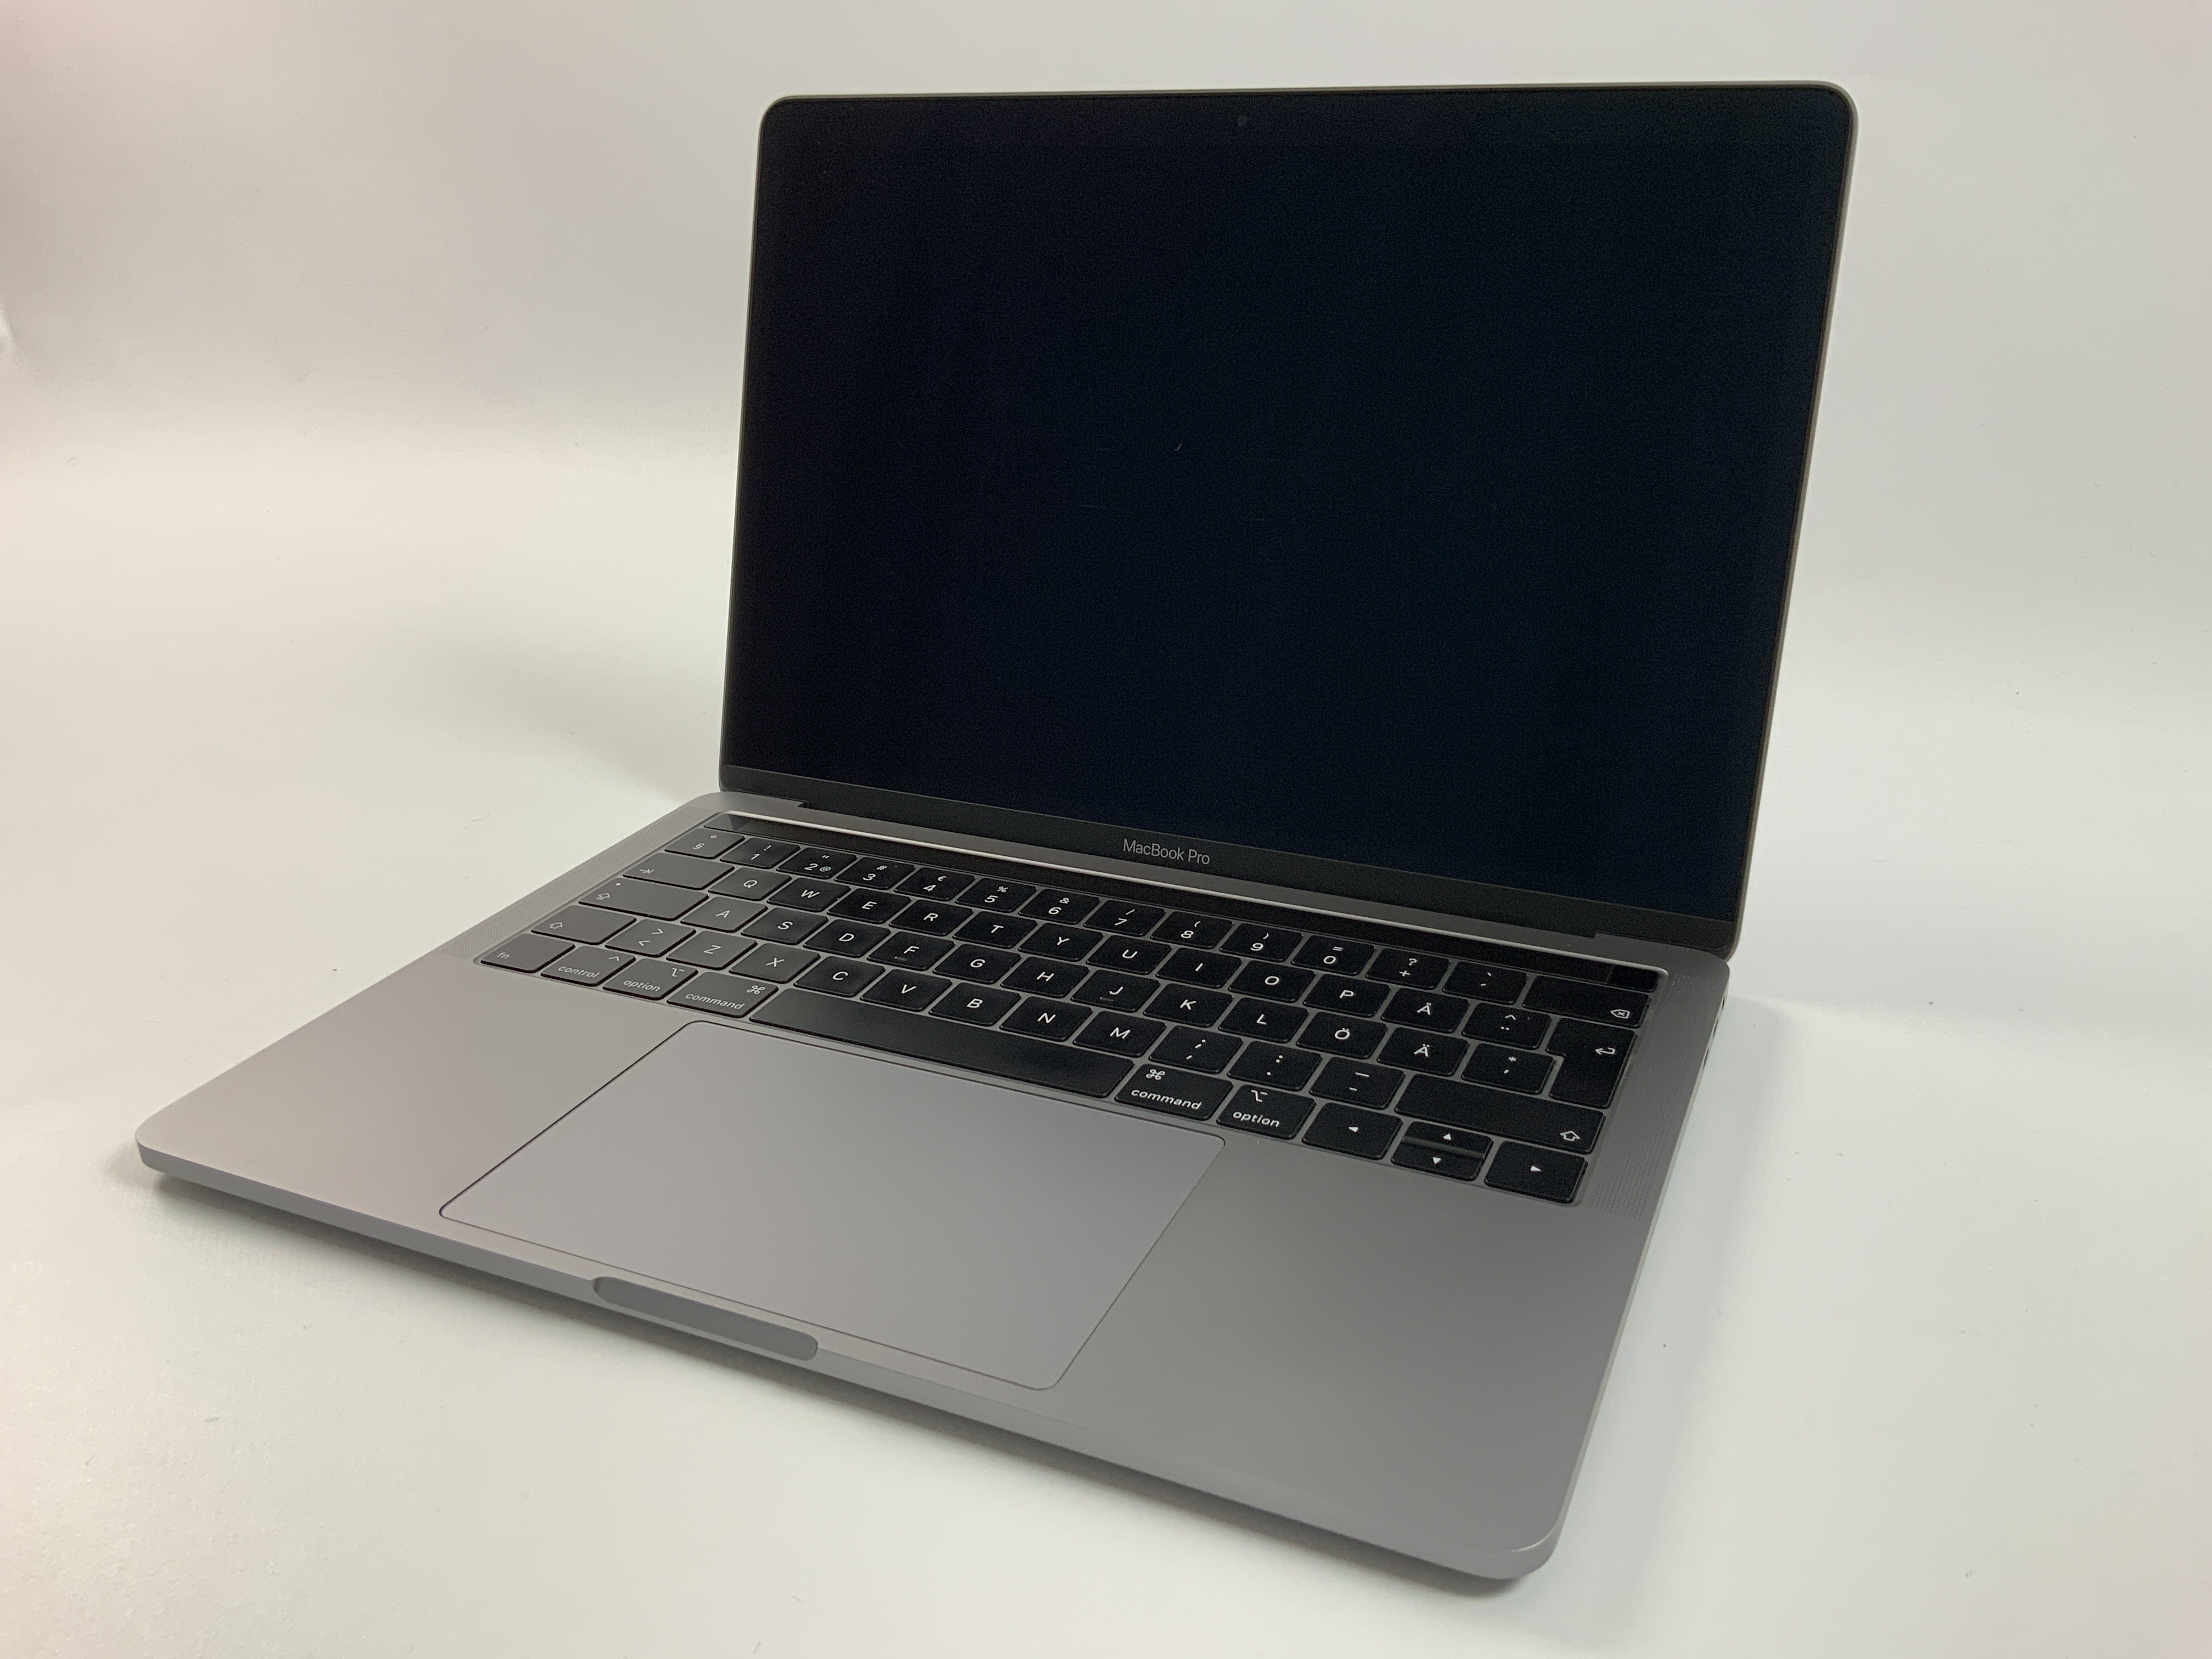 MacBook Pro 13" 4TBT Mid 2019 (Intel Quad-Core i7 2.8 GHz 16 GB RAM 256 GB SSD), Space Gray, Intel Quad-Core i7 2.8 GHz, 16 GB RAM, 256 GB SSD, Afbeelding 1